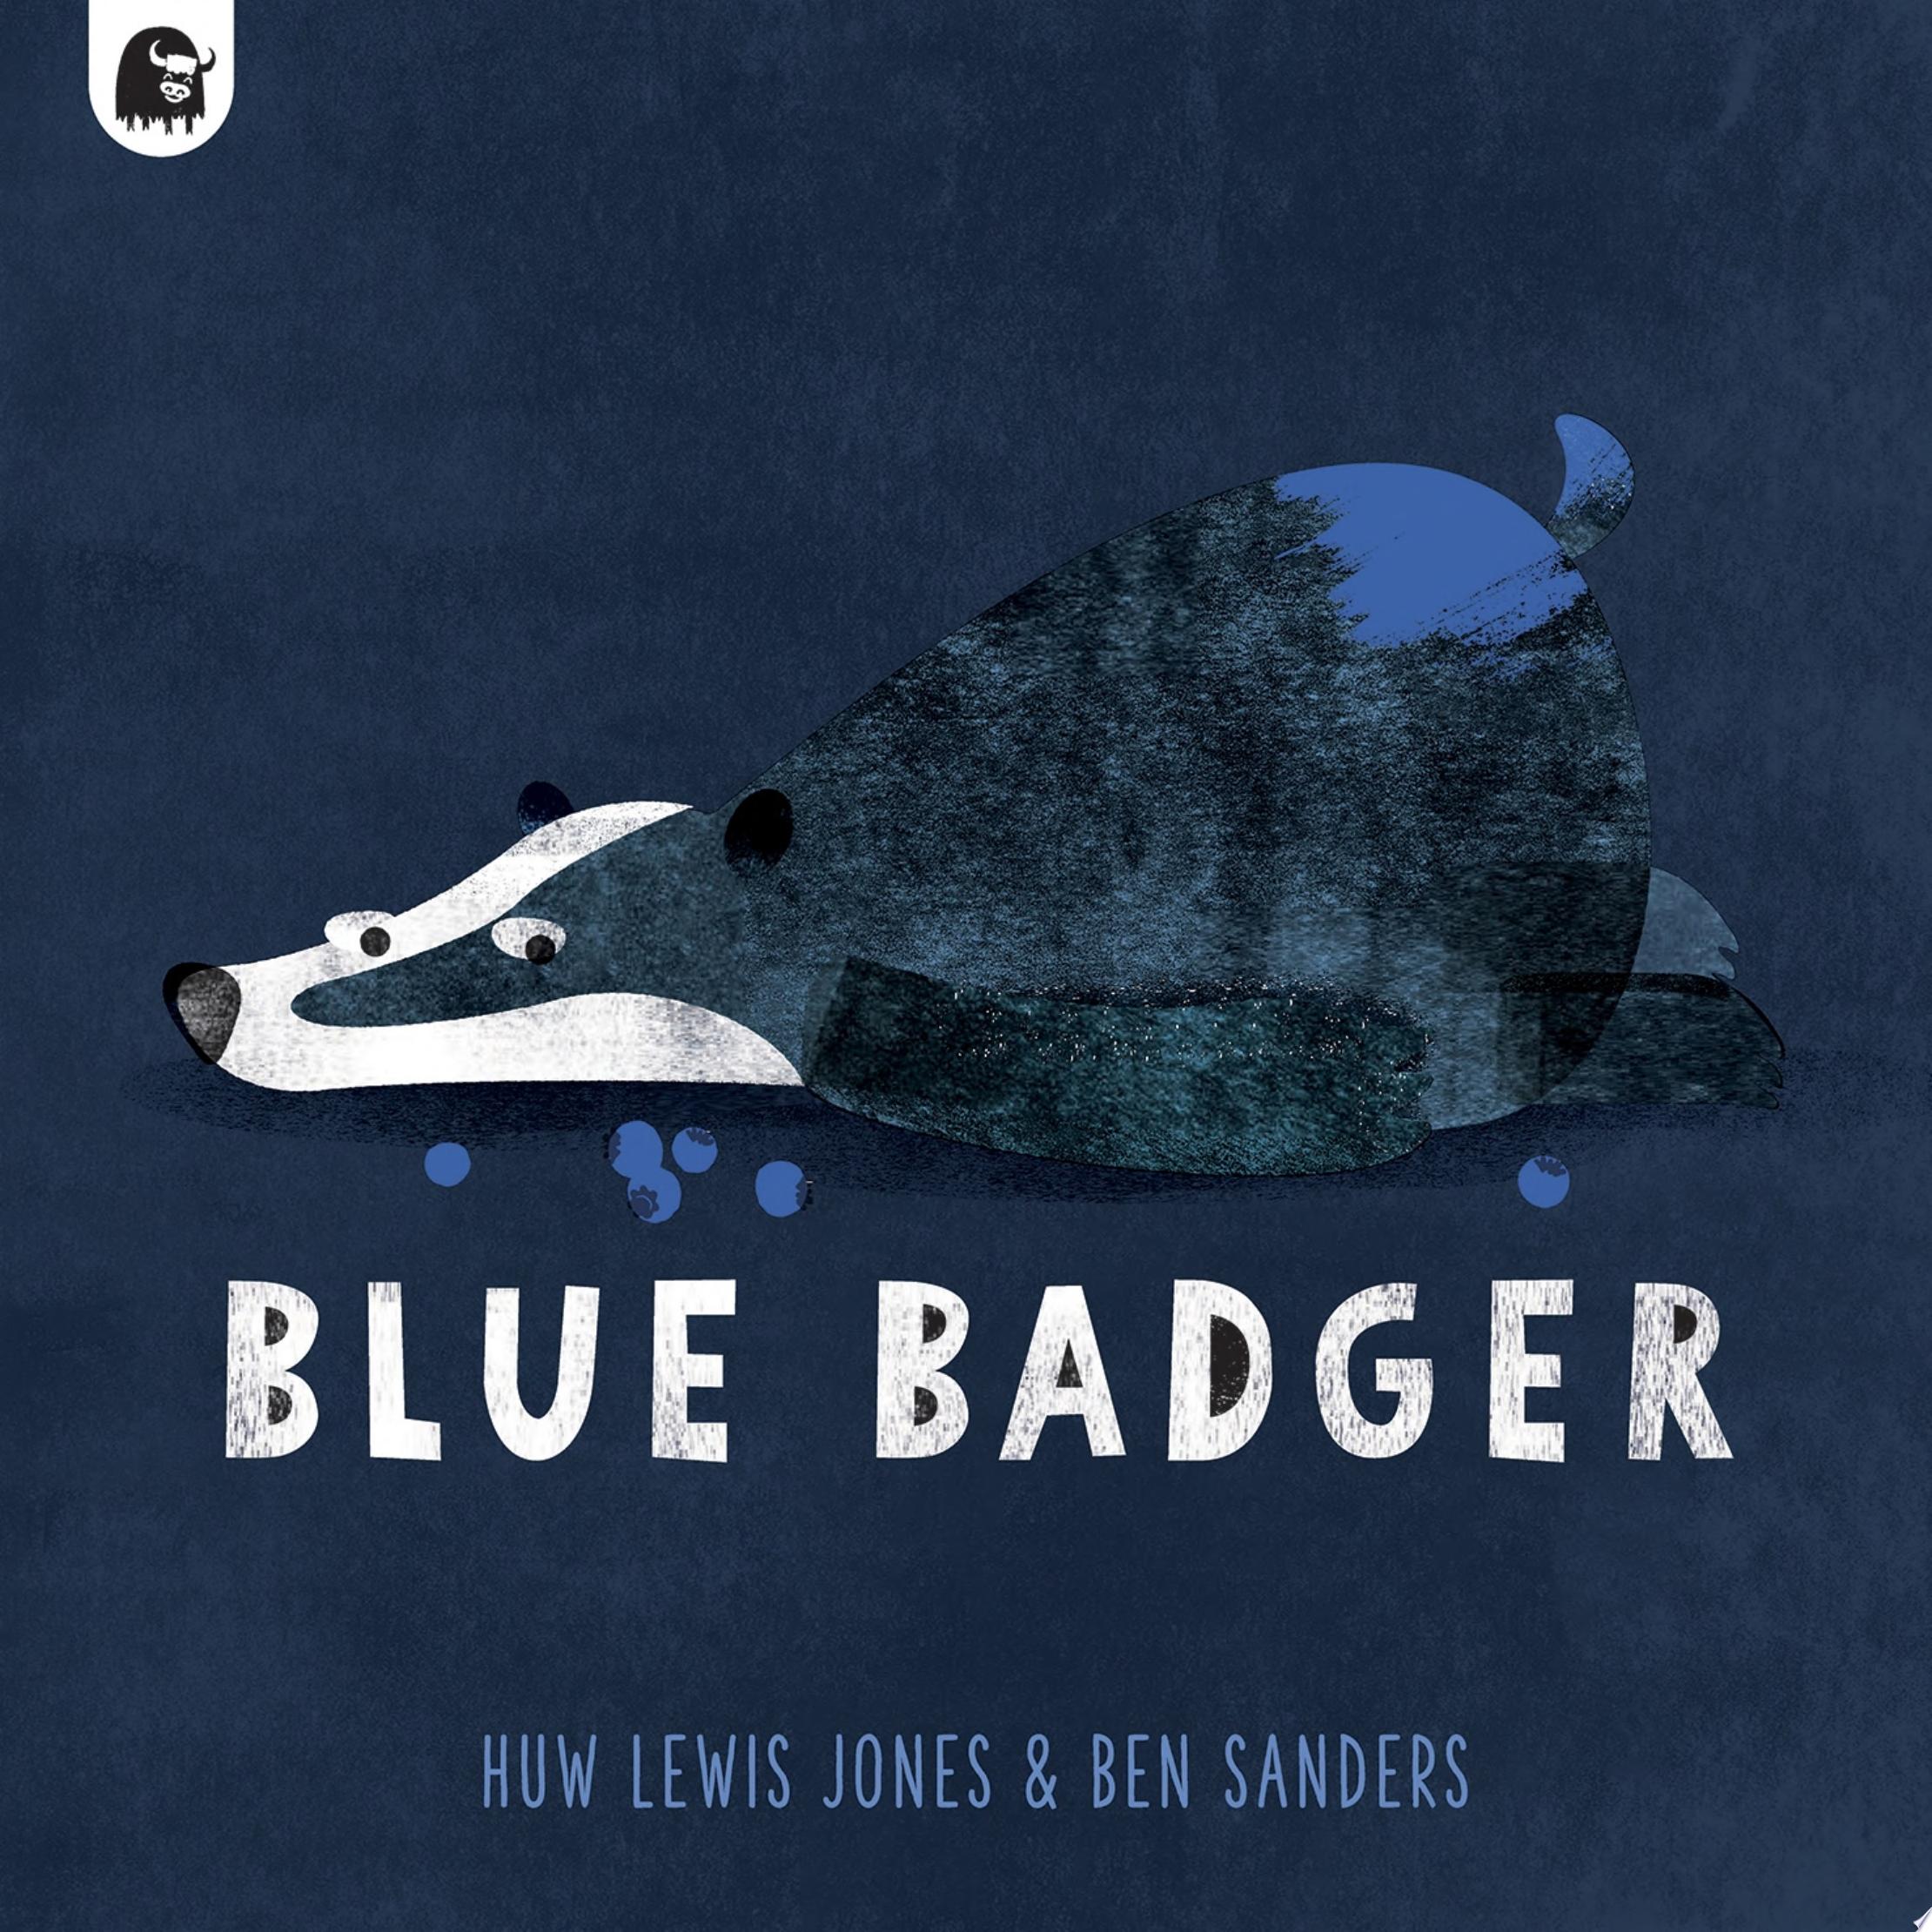 Image for "Blue Badger"